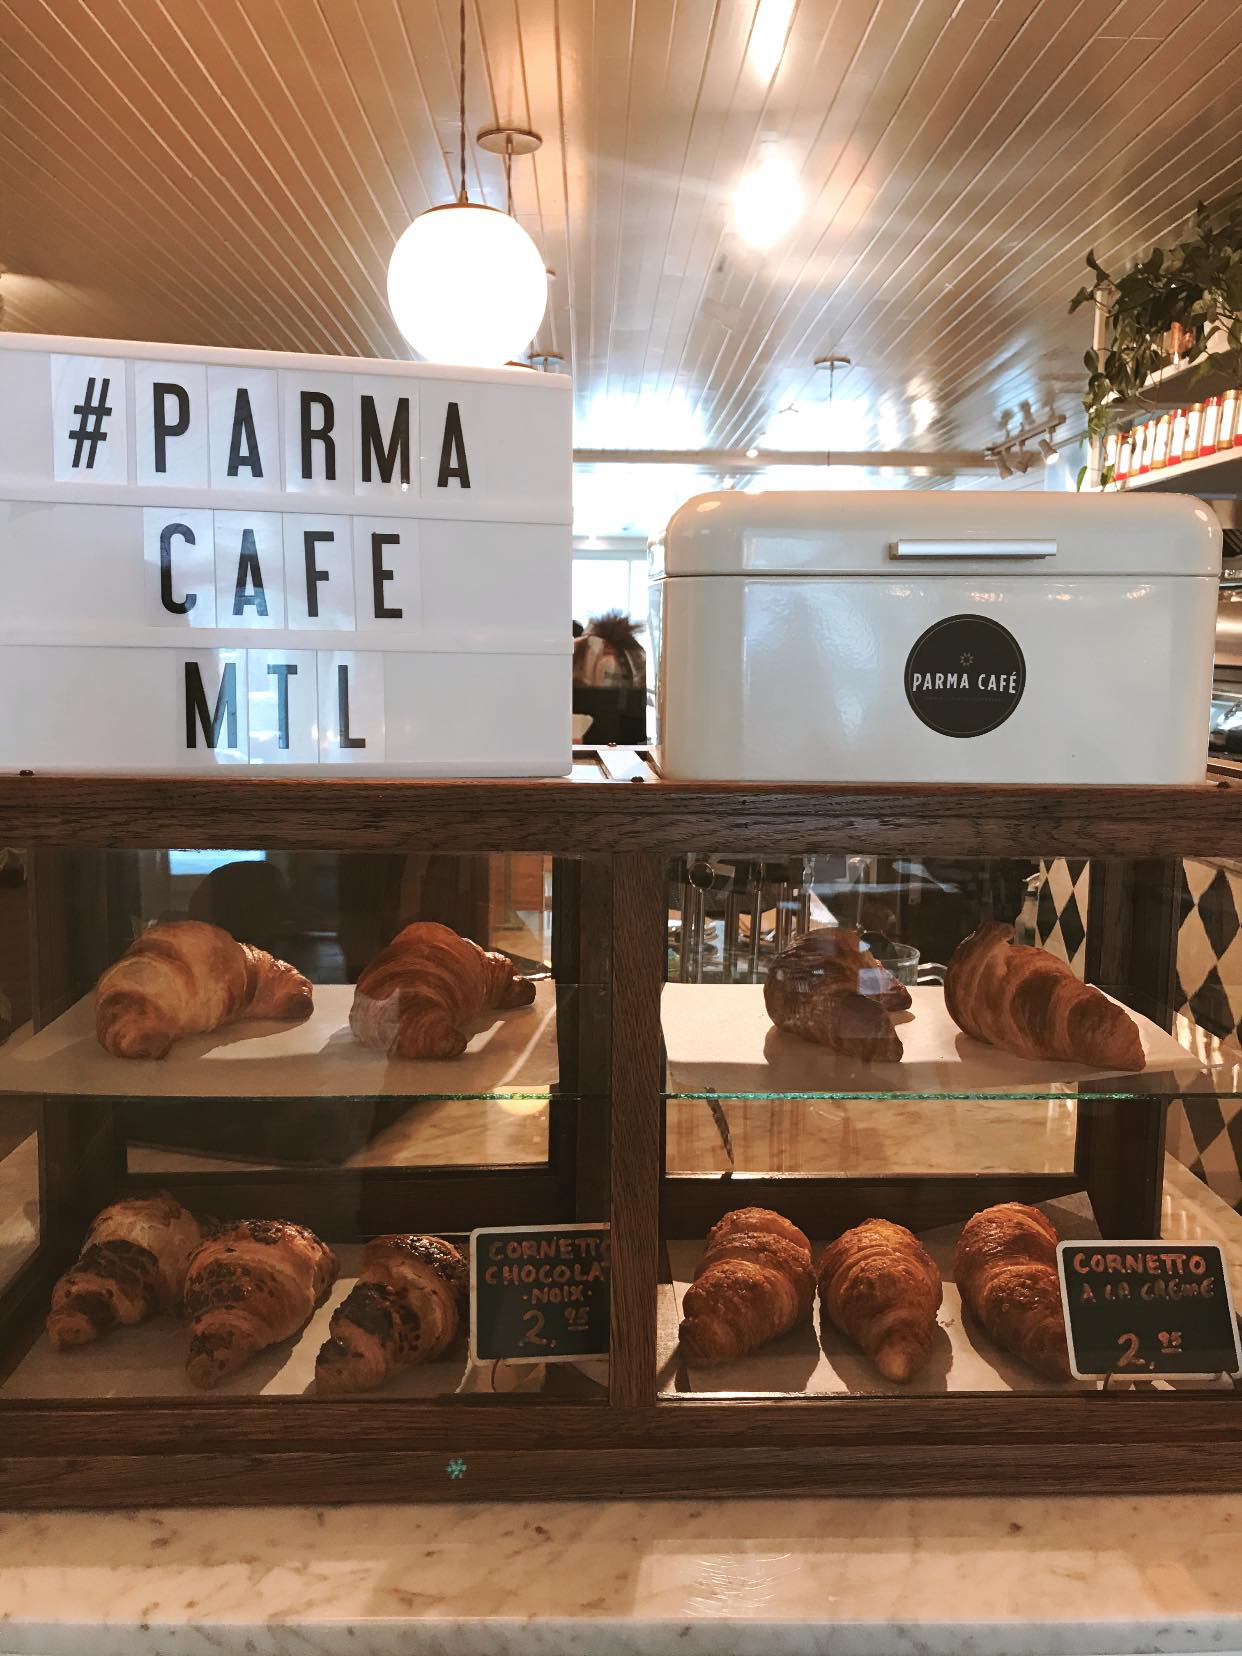 Parma Café